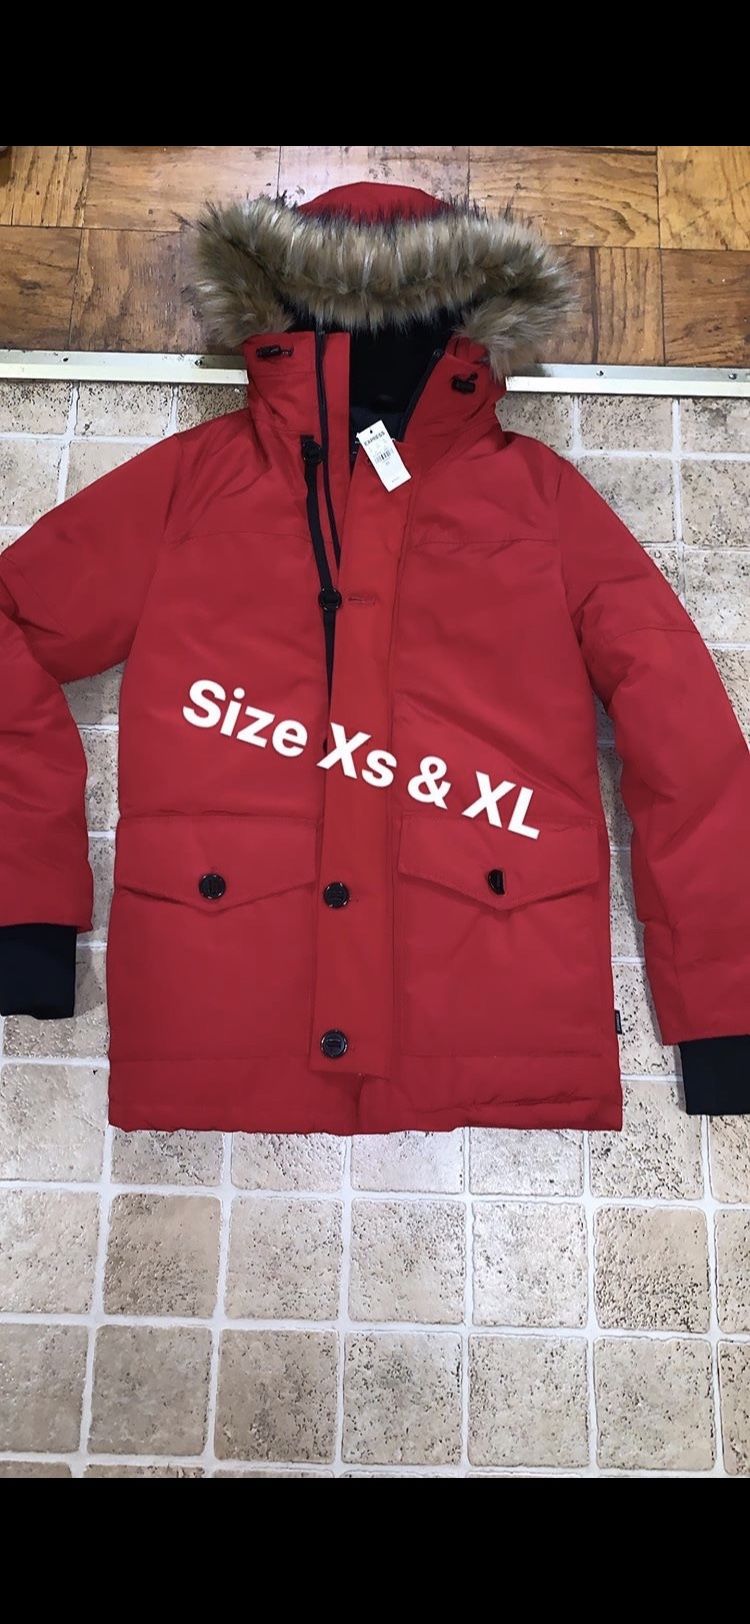 XL express coat left it’s 248$ so I want 120$